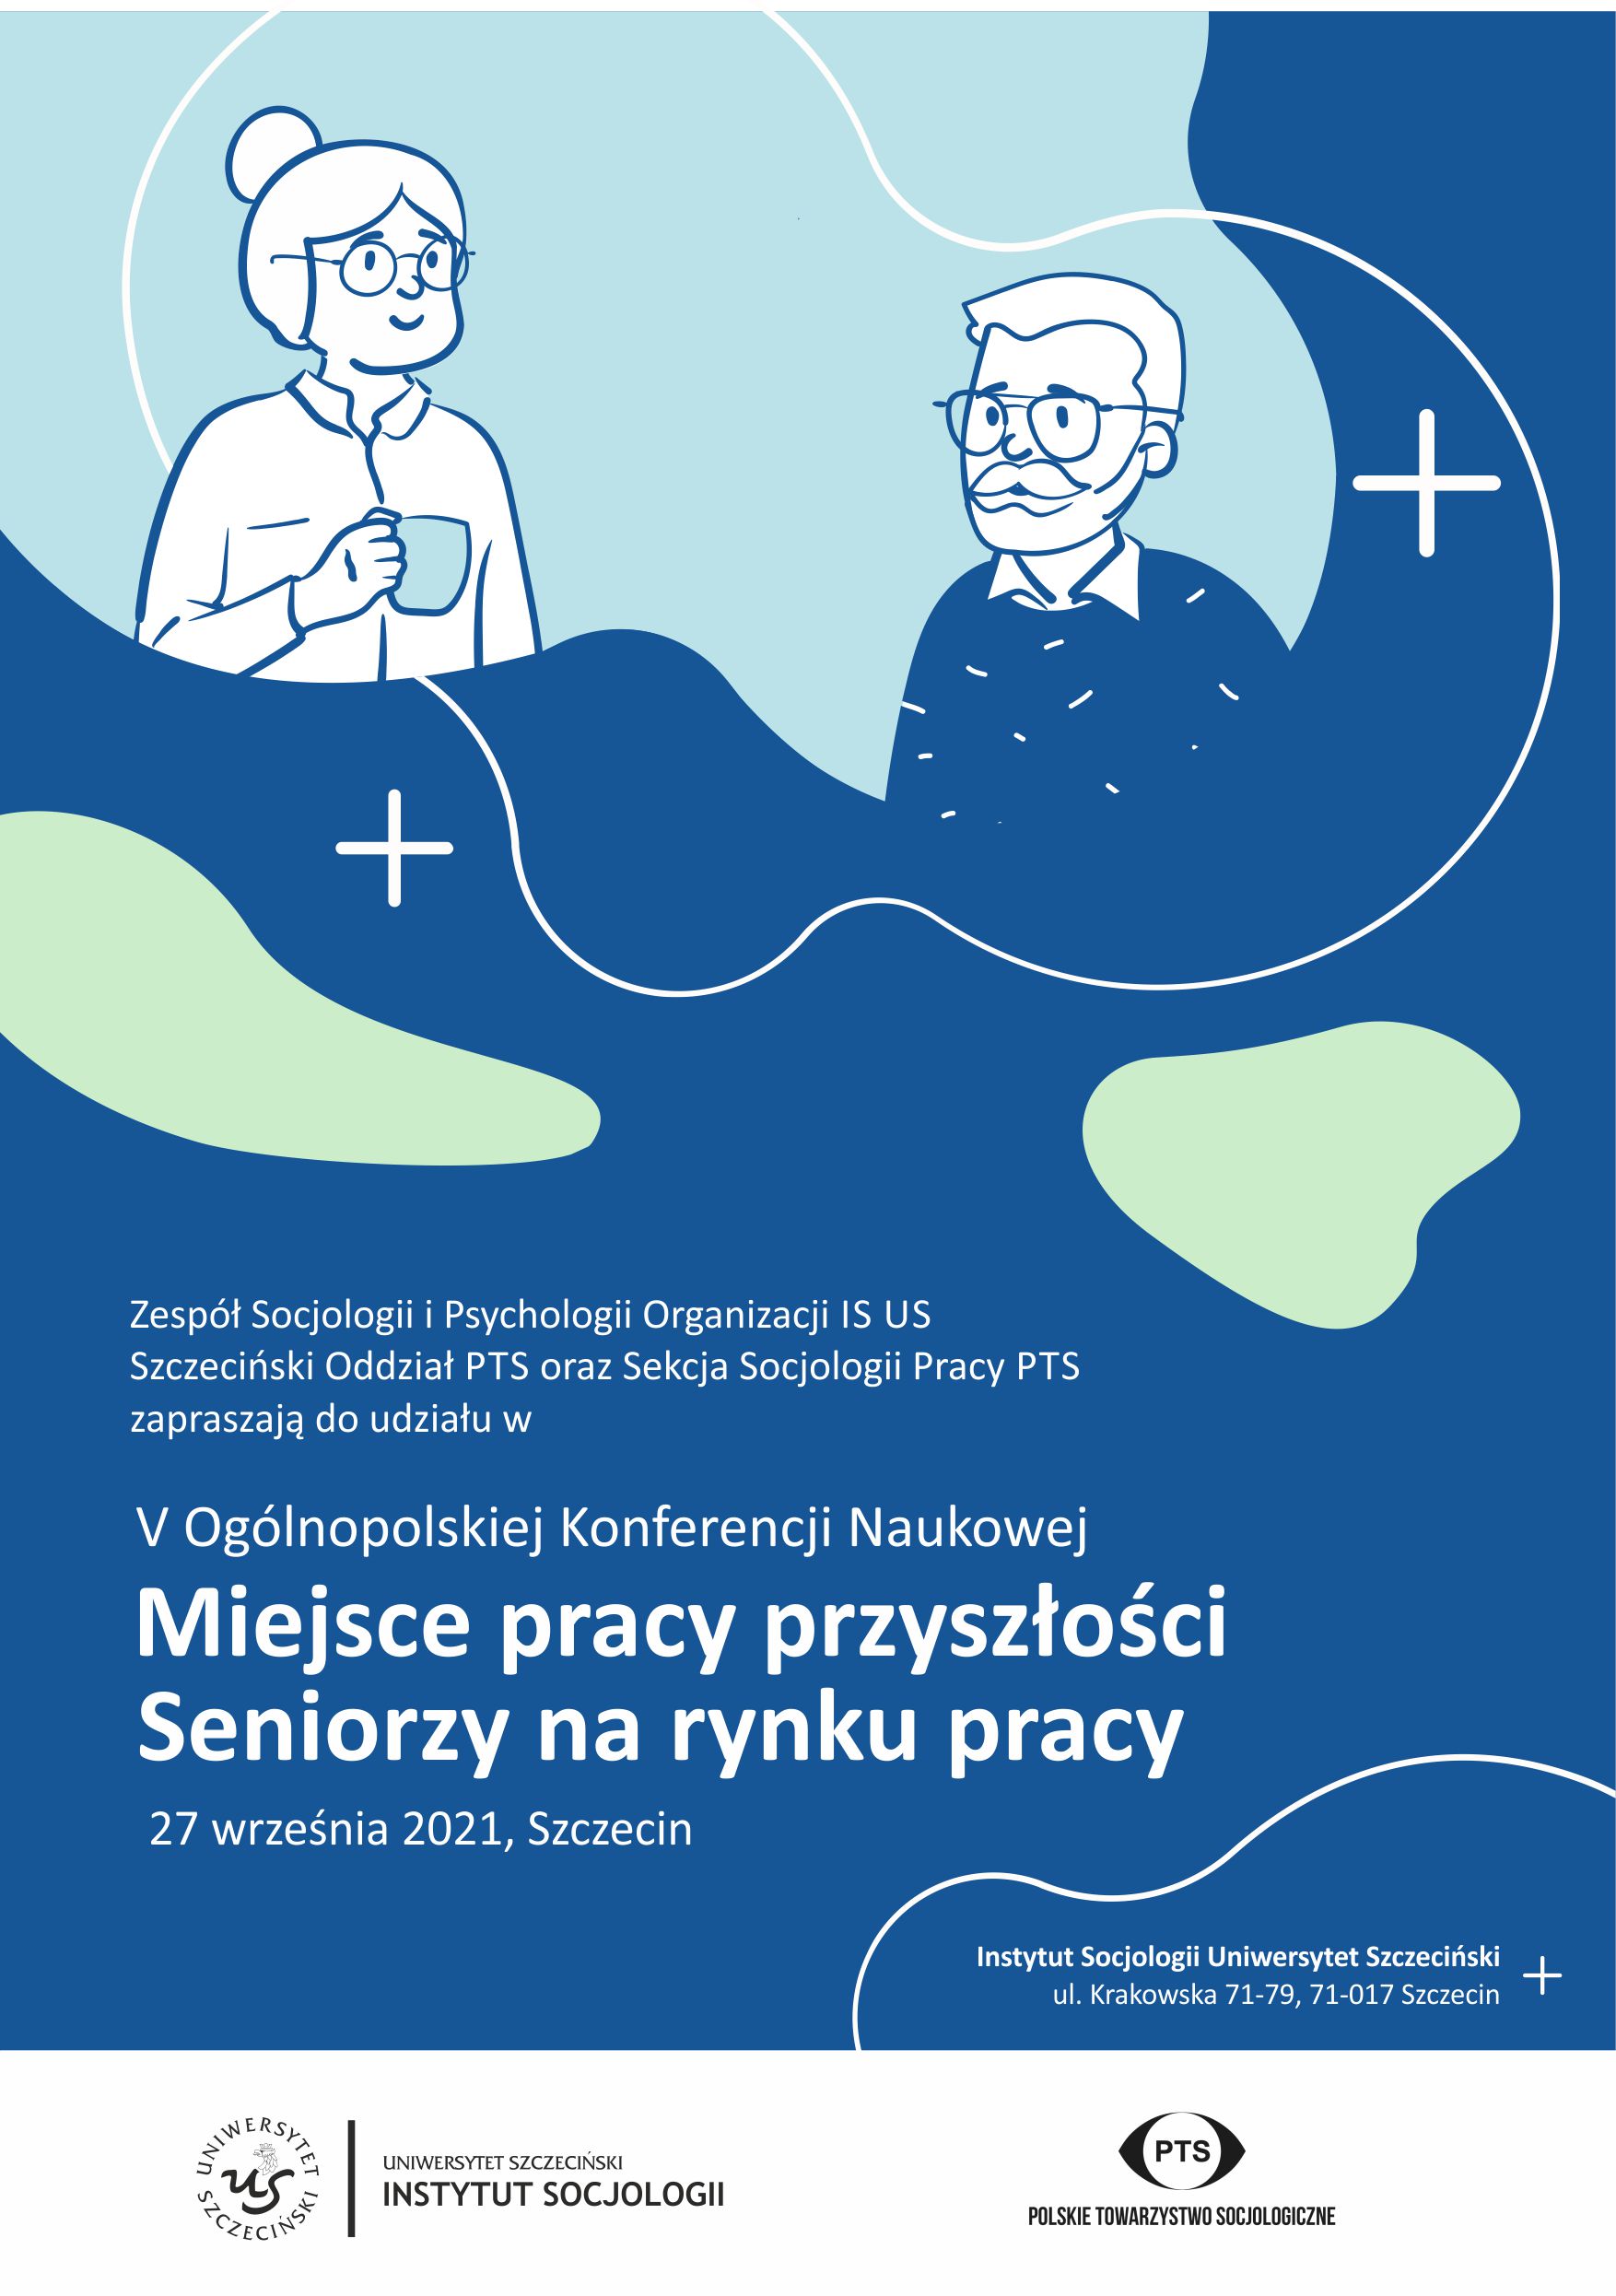 Program V Ogólnopolskiej Konferencji Naukowej: Miejsce pracy przyszłości – Seniorzy na rynku pracy